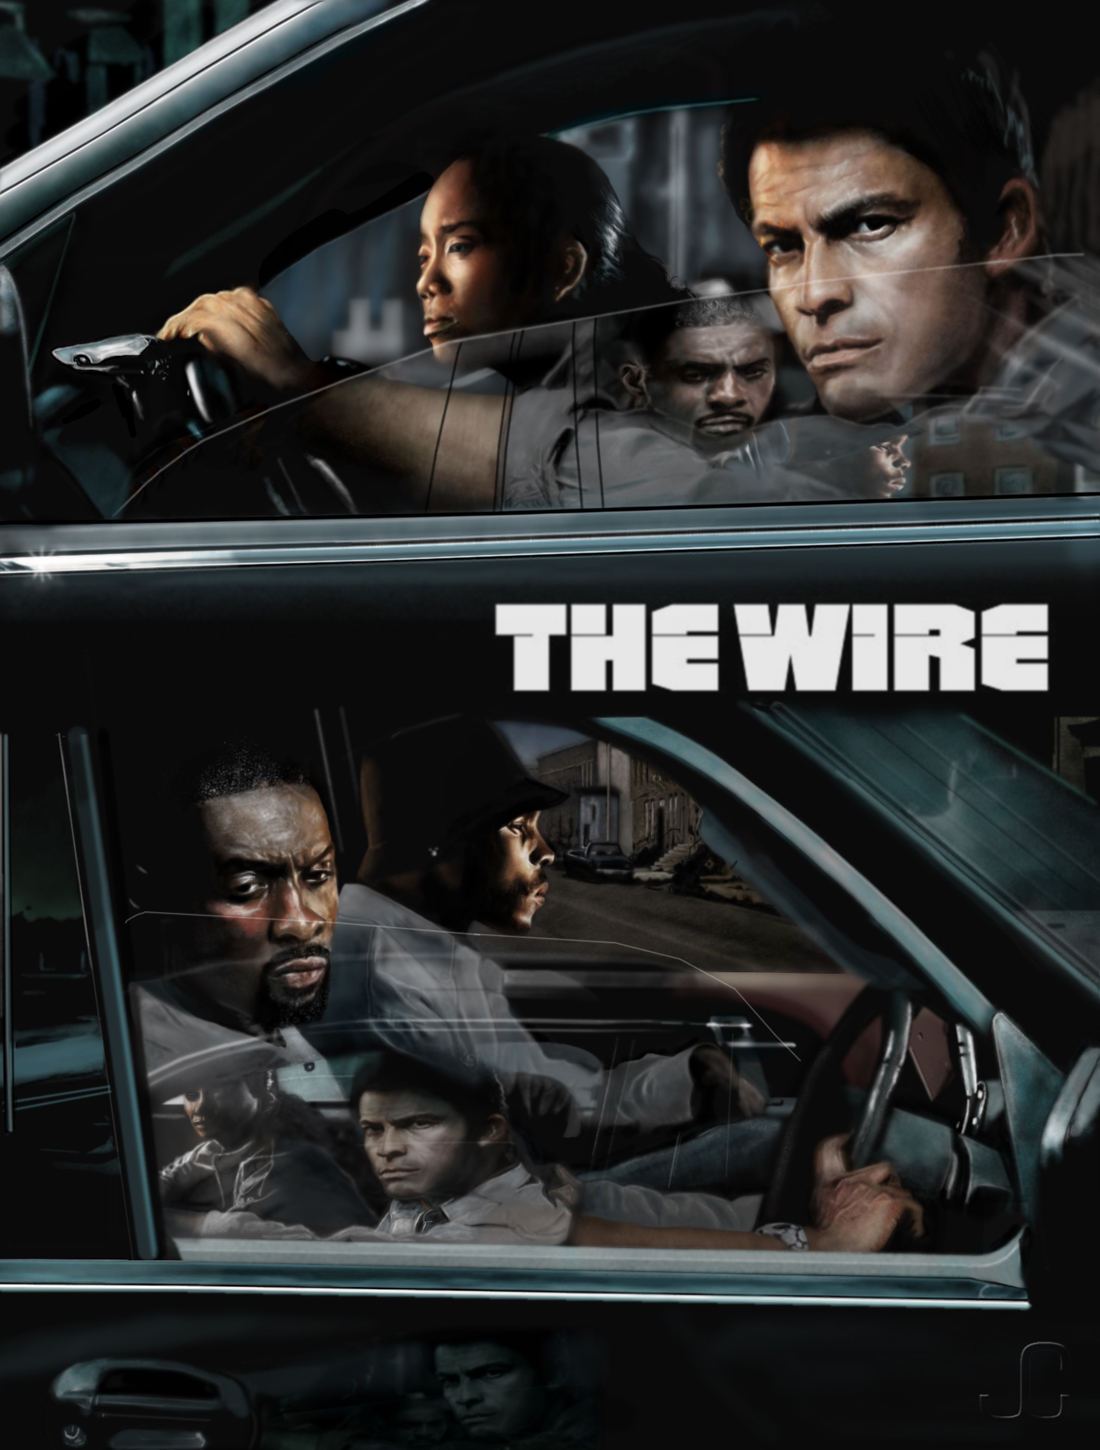 Affiche promotionnelle pour la série TV "The Wire"